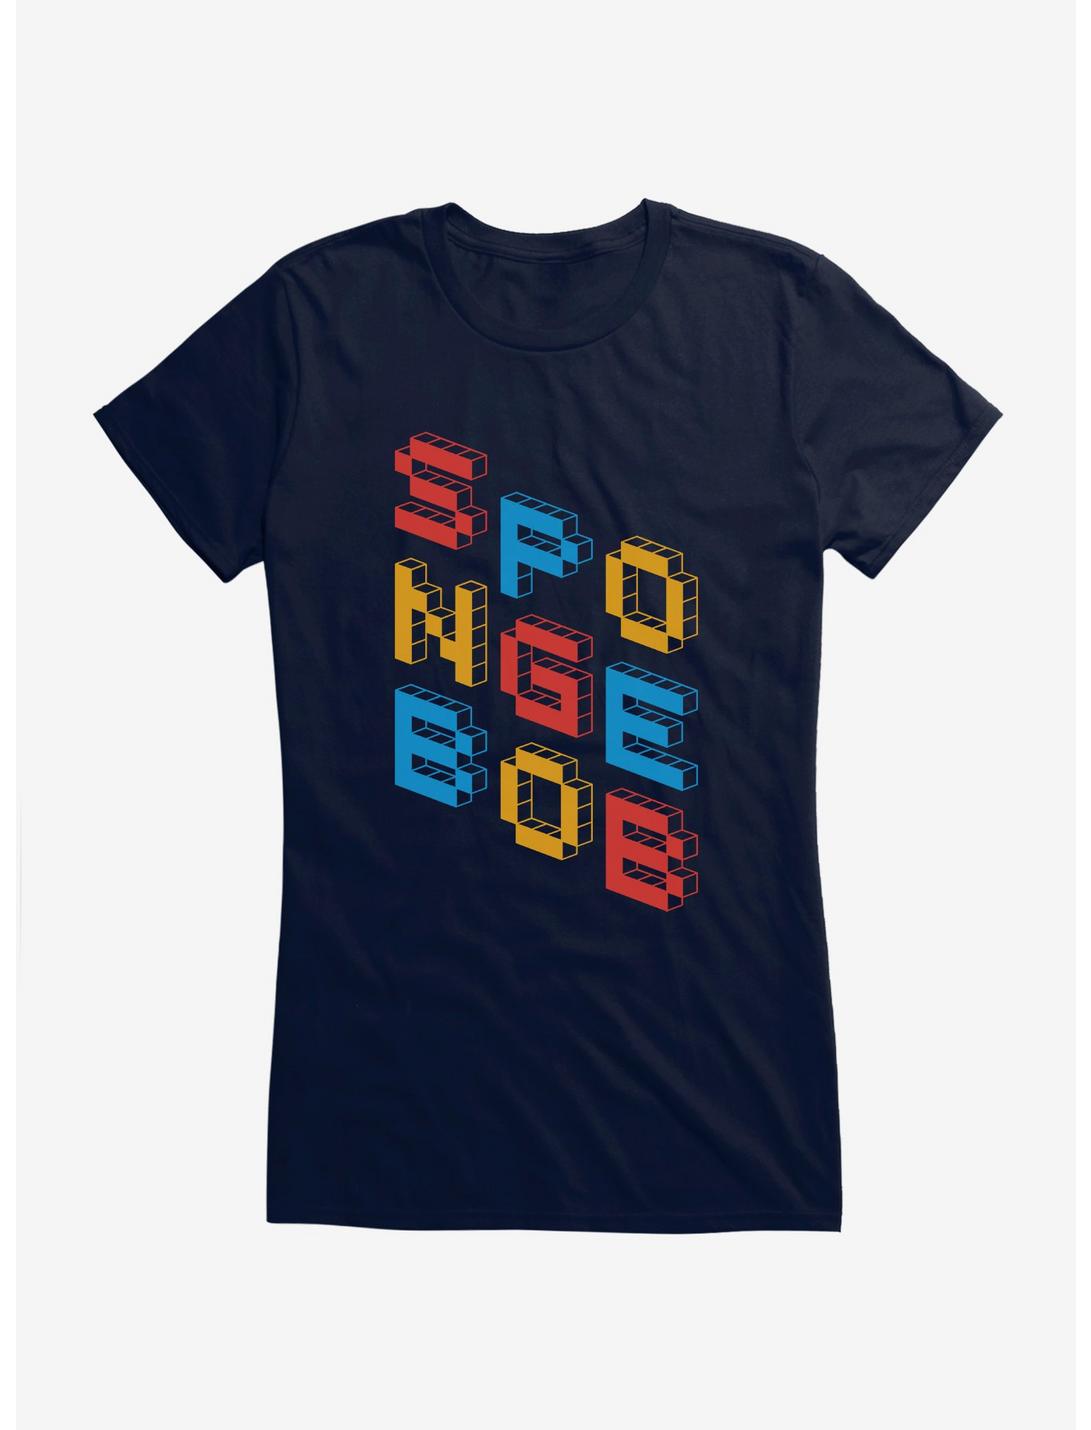 SpongeBob SquarePants Block Script SpongeBob Girls T-Shirt, , hi-res